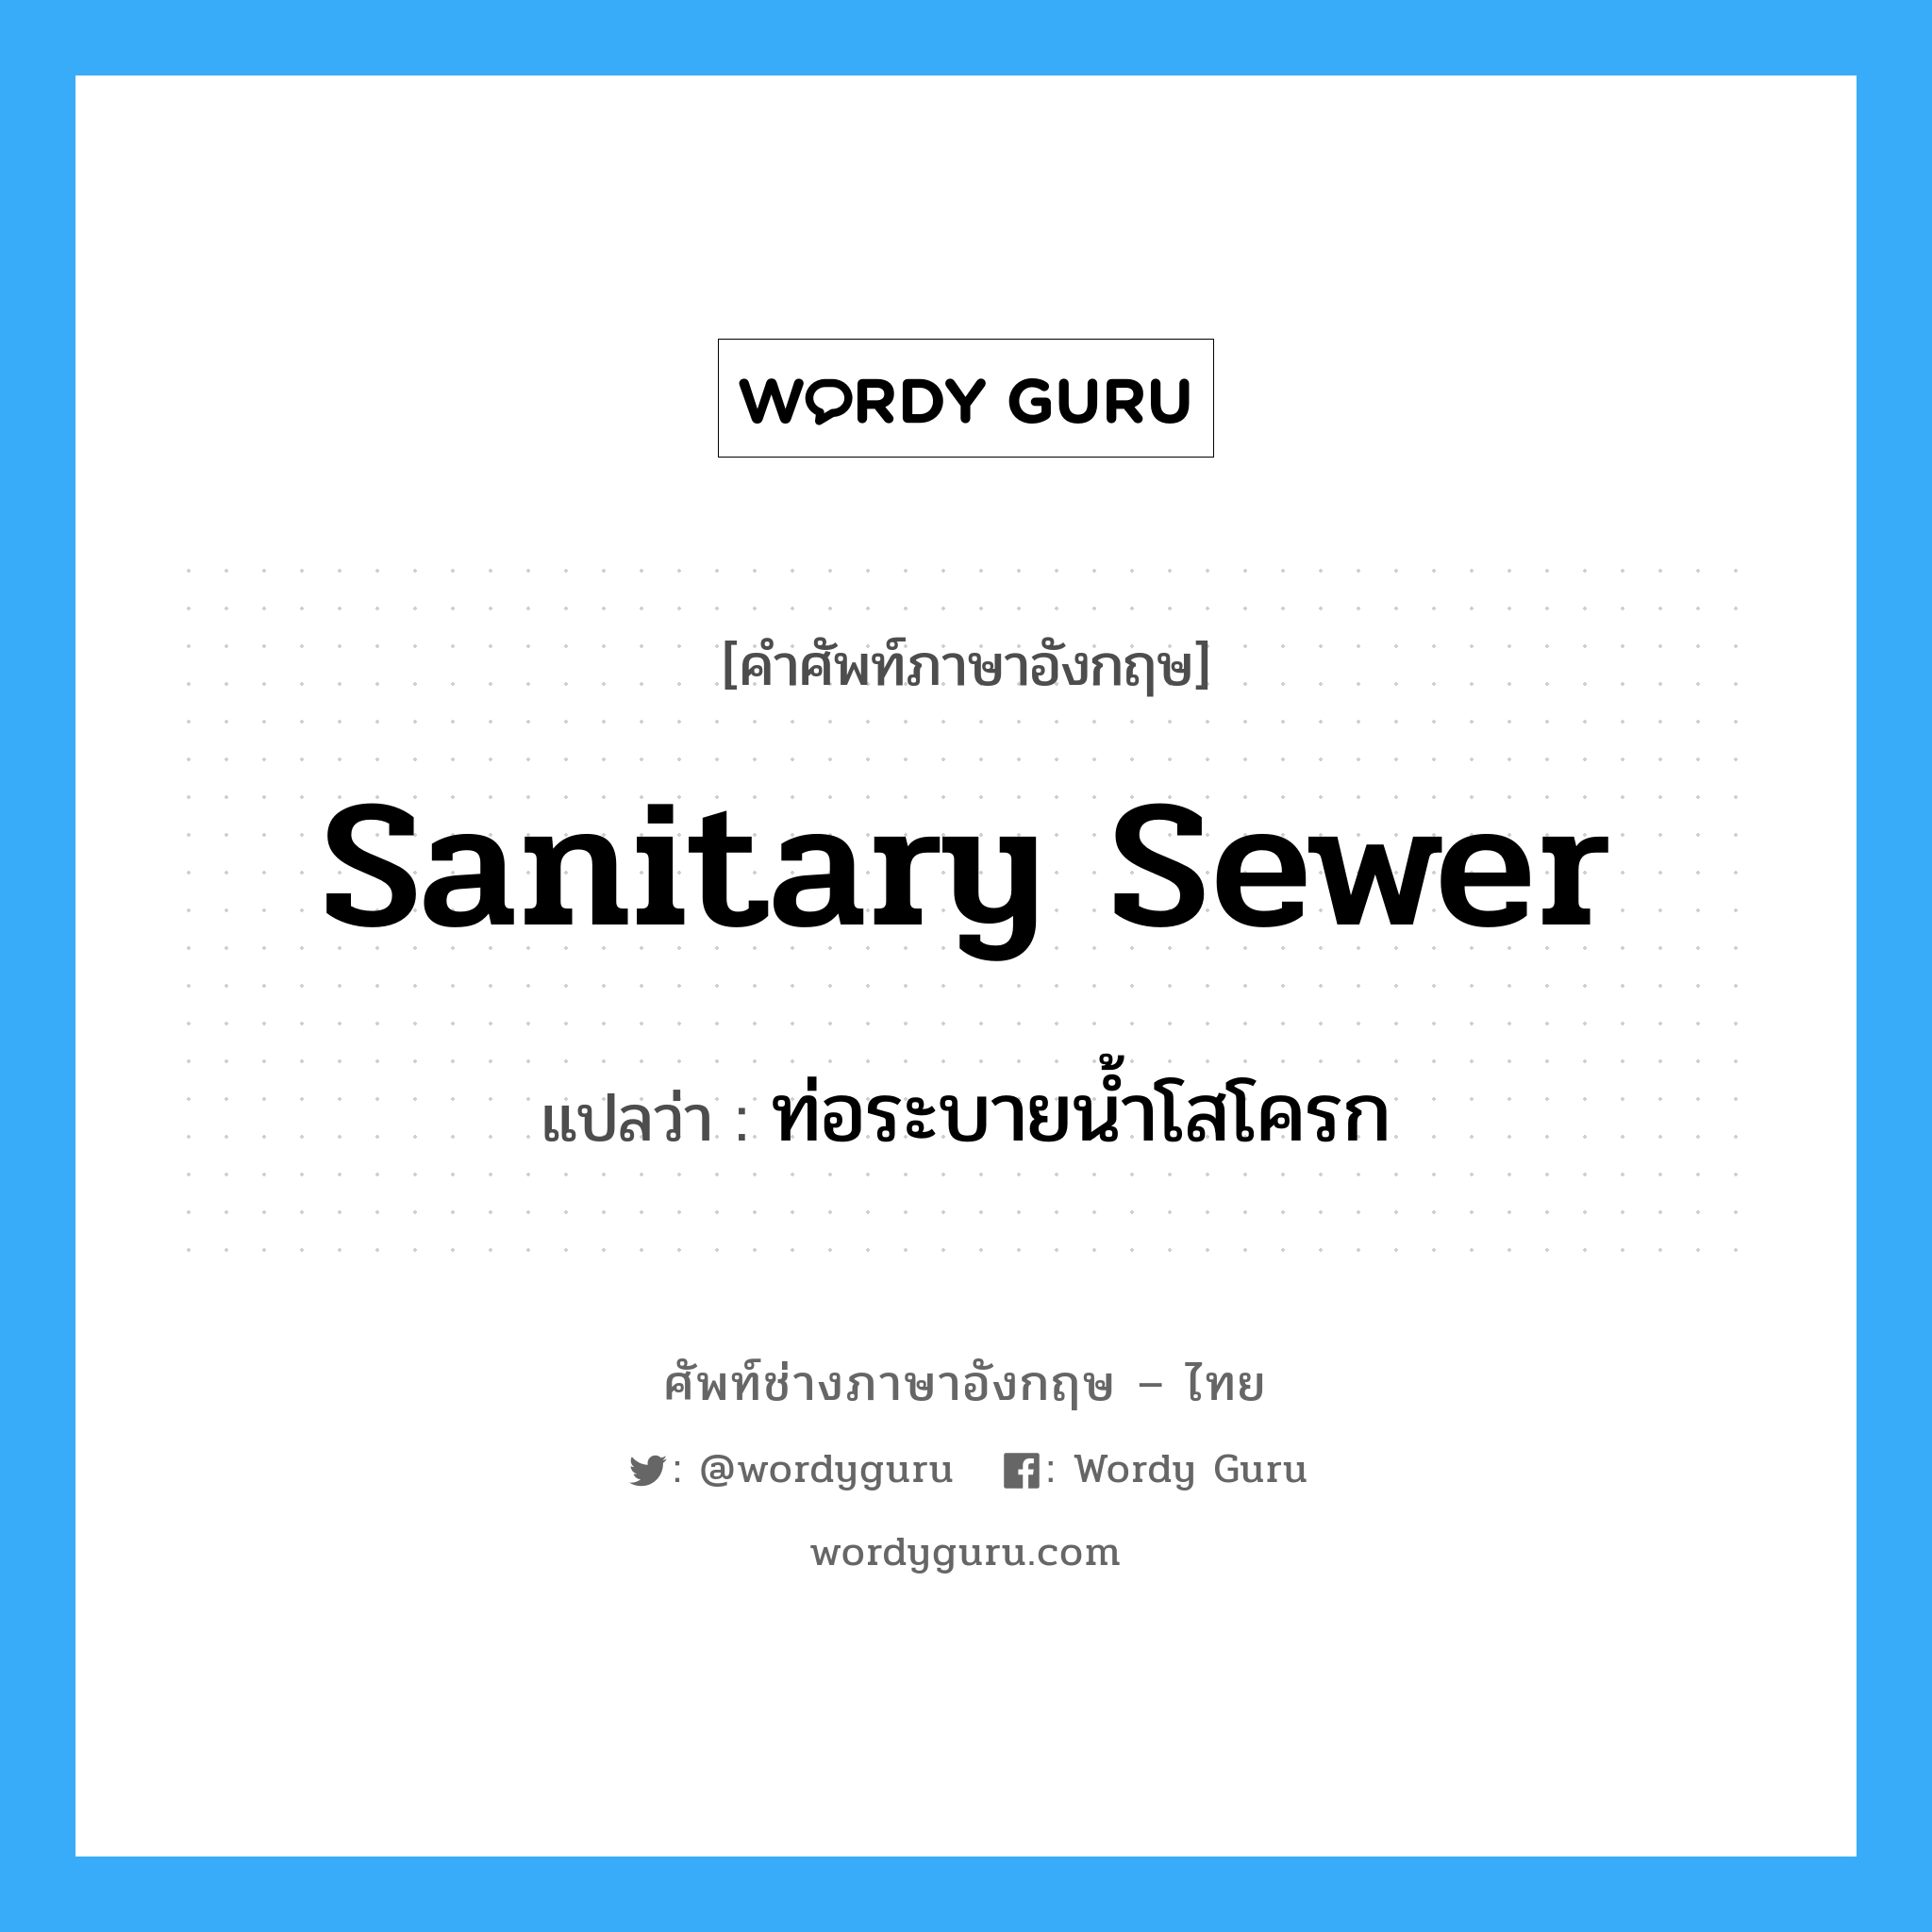 sanitary sewer แปลว่า?, คำศัพท์ช่างภาษาอังกฤษ - ไทย sanitary sewer คำศัพท์ภาษาอังกฤษ sanitary sewer แปลว่า ท่อระบายน้ำโสโครก